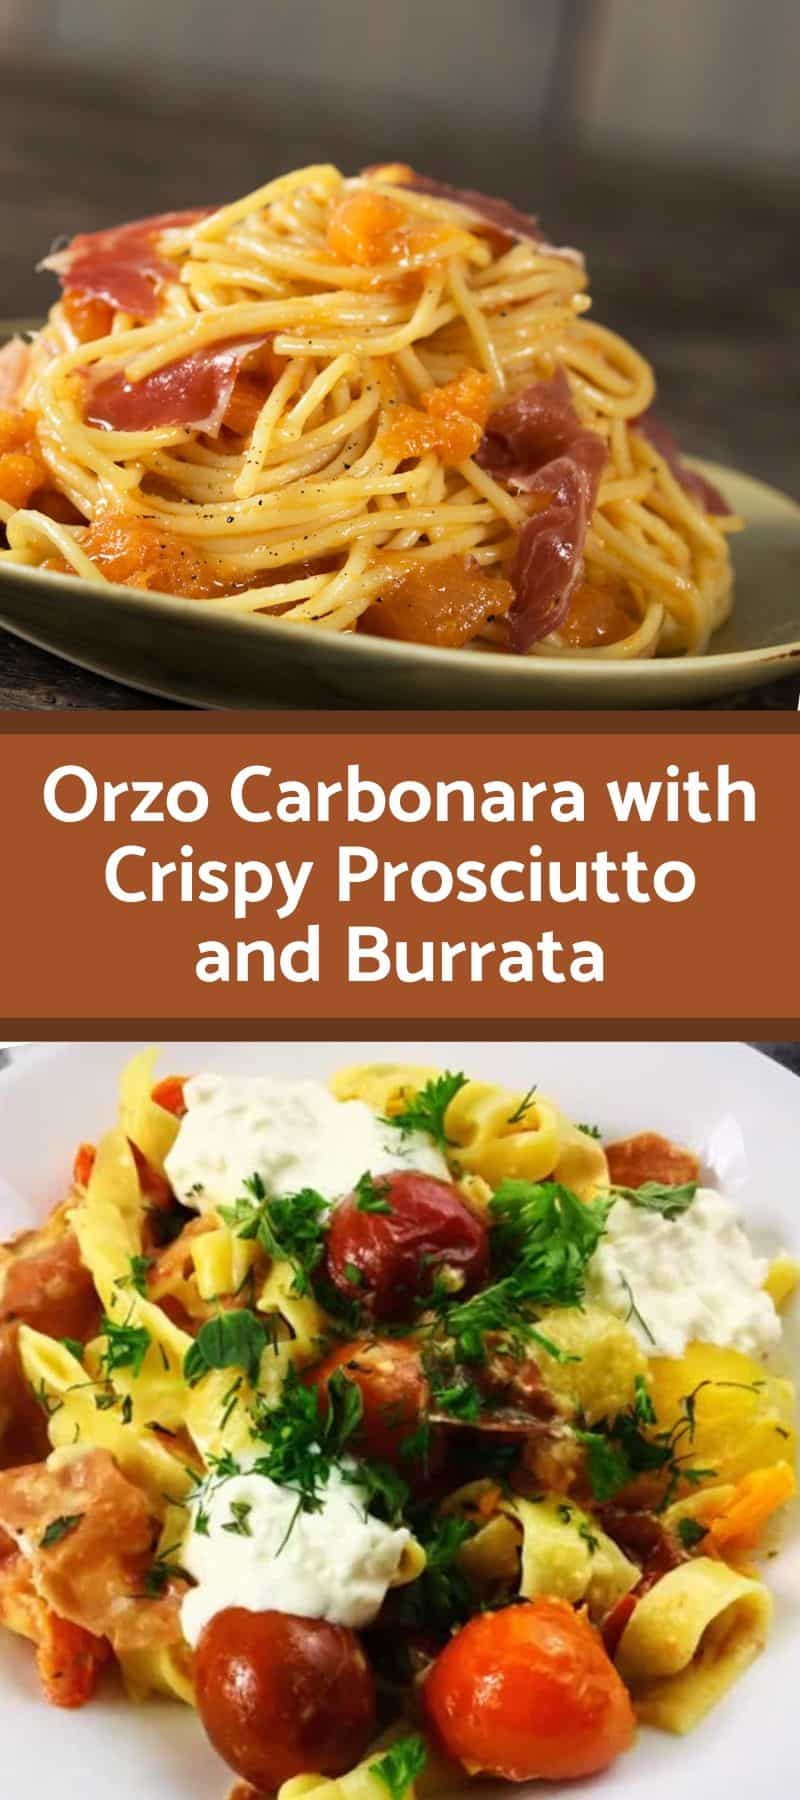 Orzo Carbonara with Crispy Prosciutto and Burrata